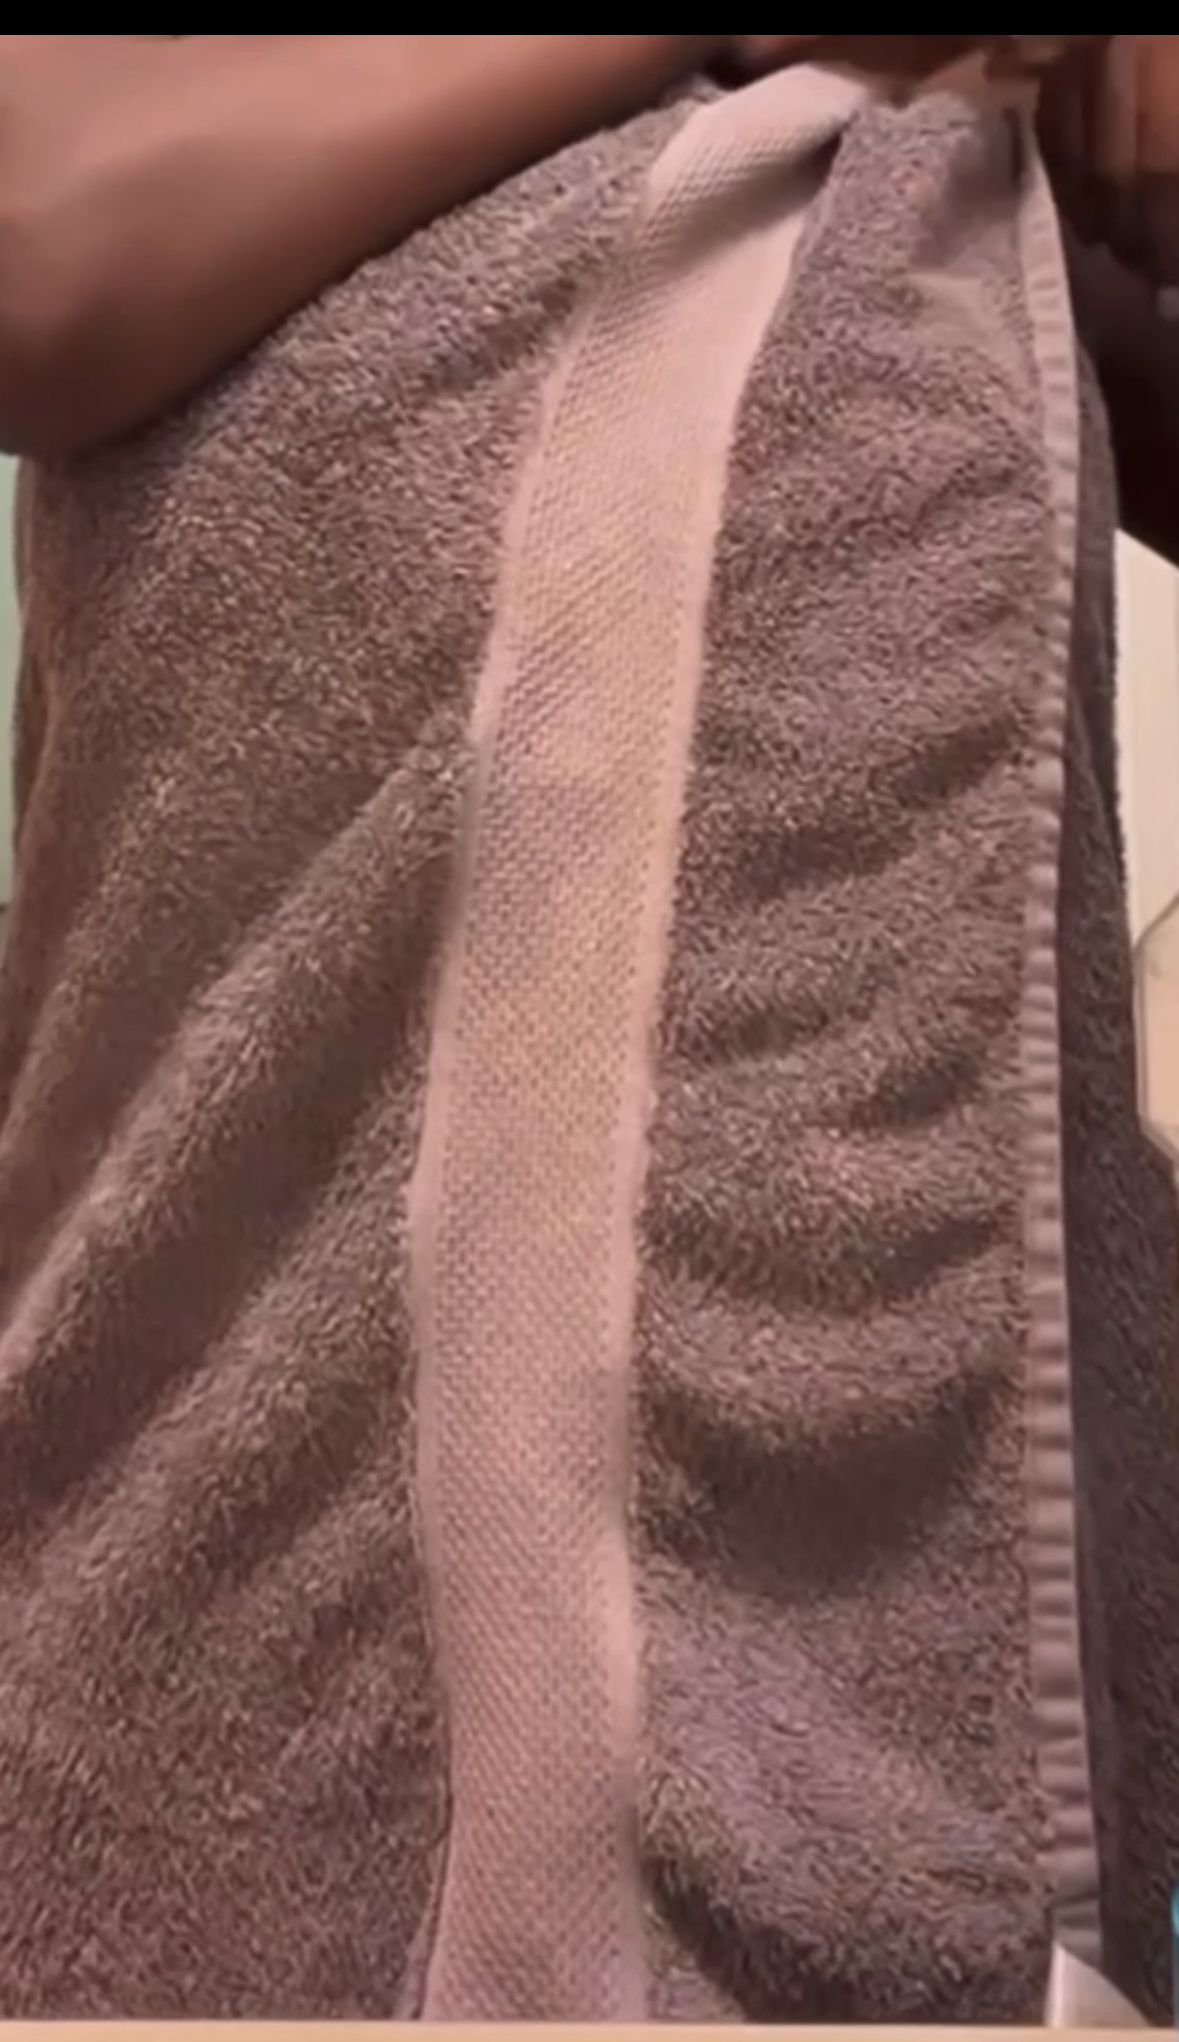 towel falls